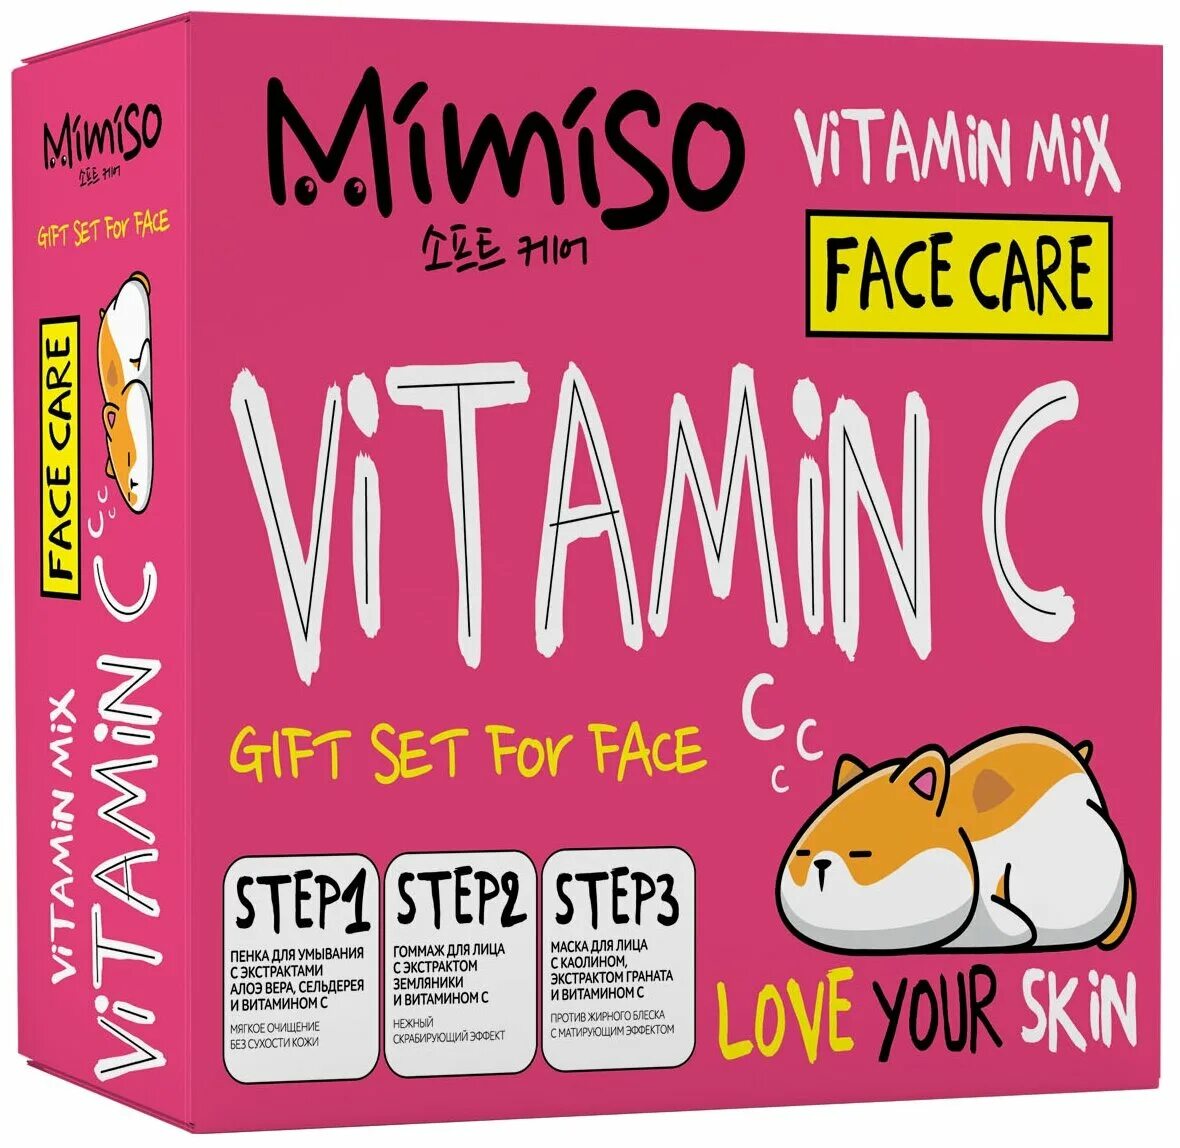 Vitamin mix. Mimiso. Mimiso гоммаж пенка маска для лица подарочный набор. Mimiso косметика производитель.